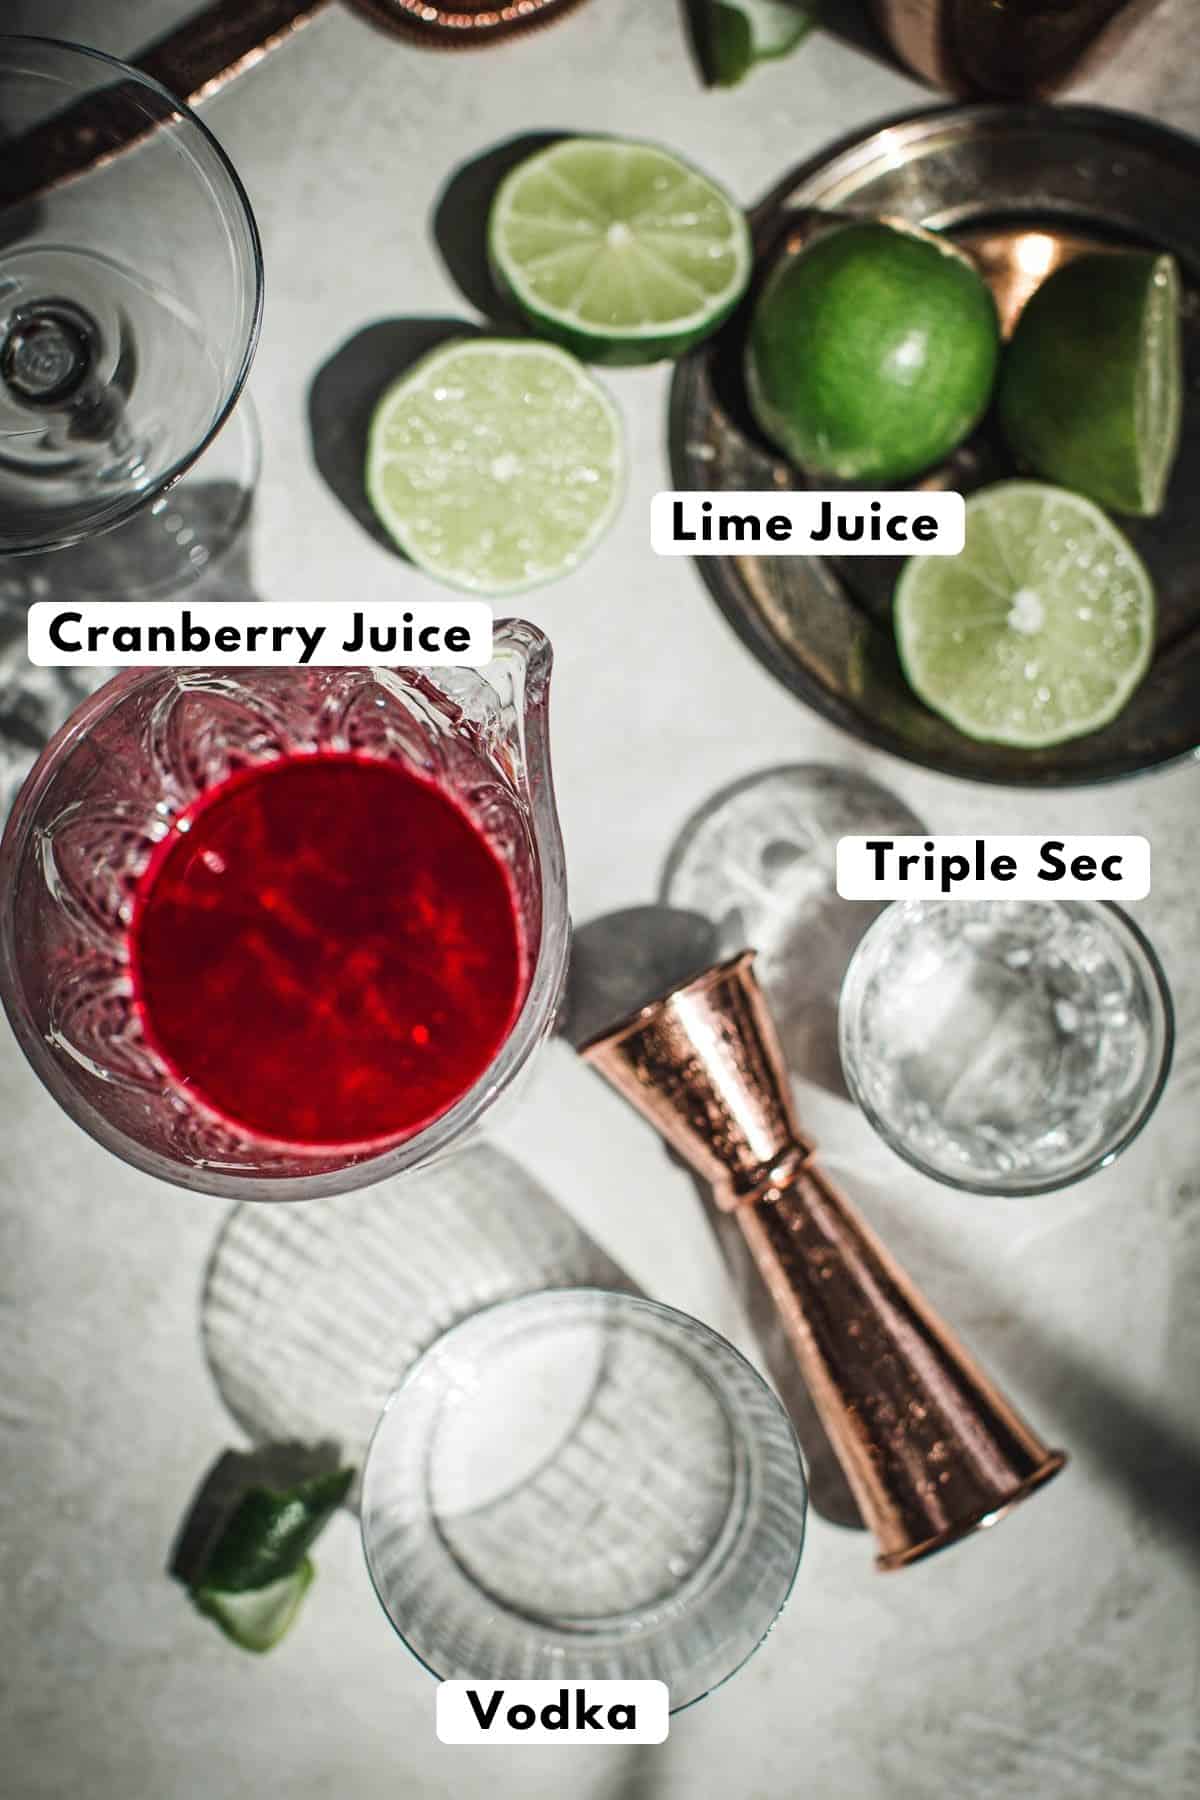 Cosmopolitan cocktail ingredients.